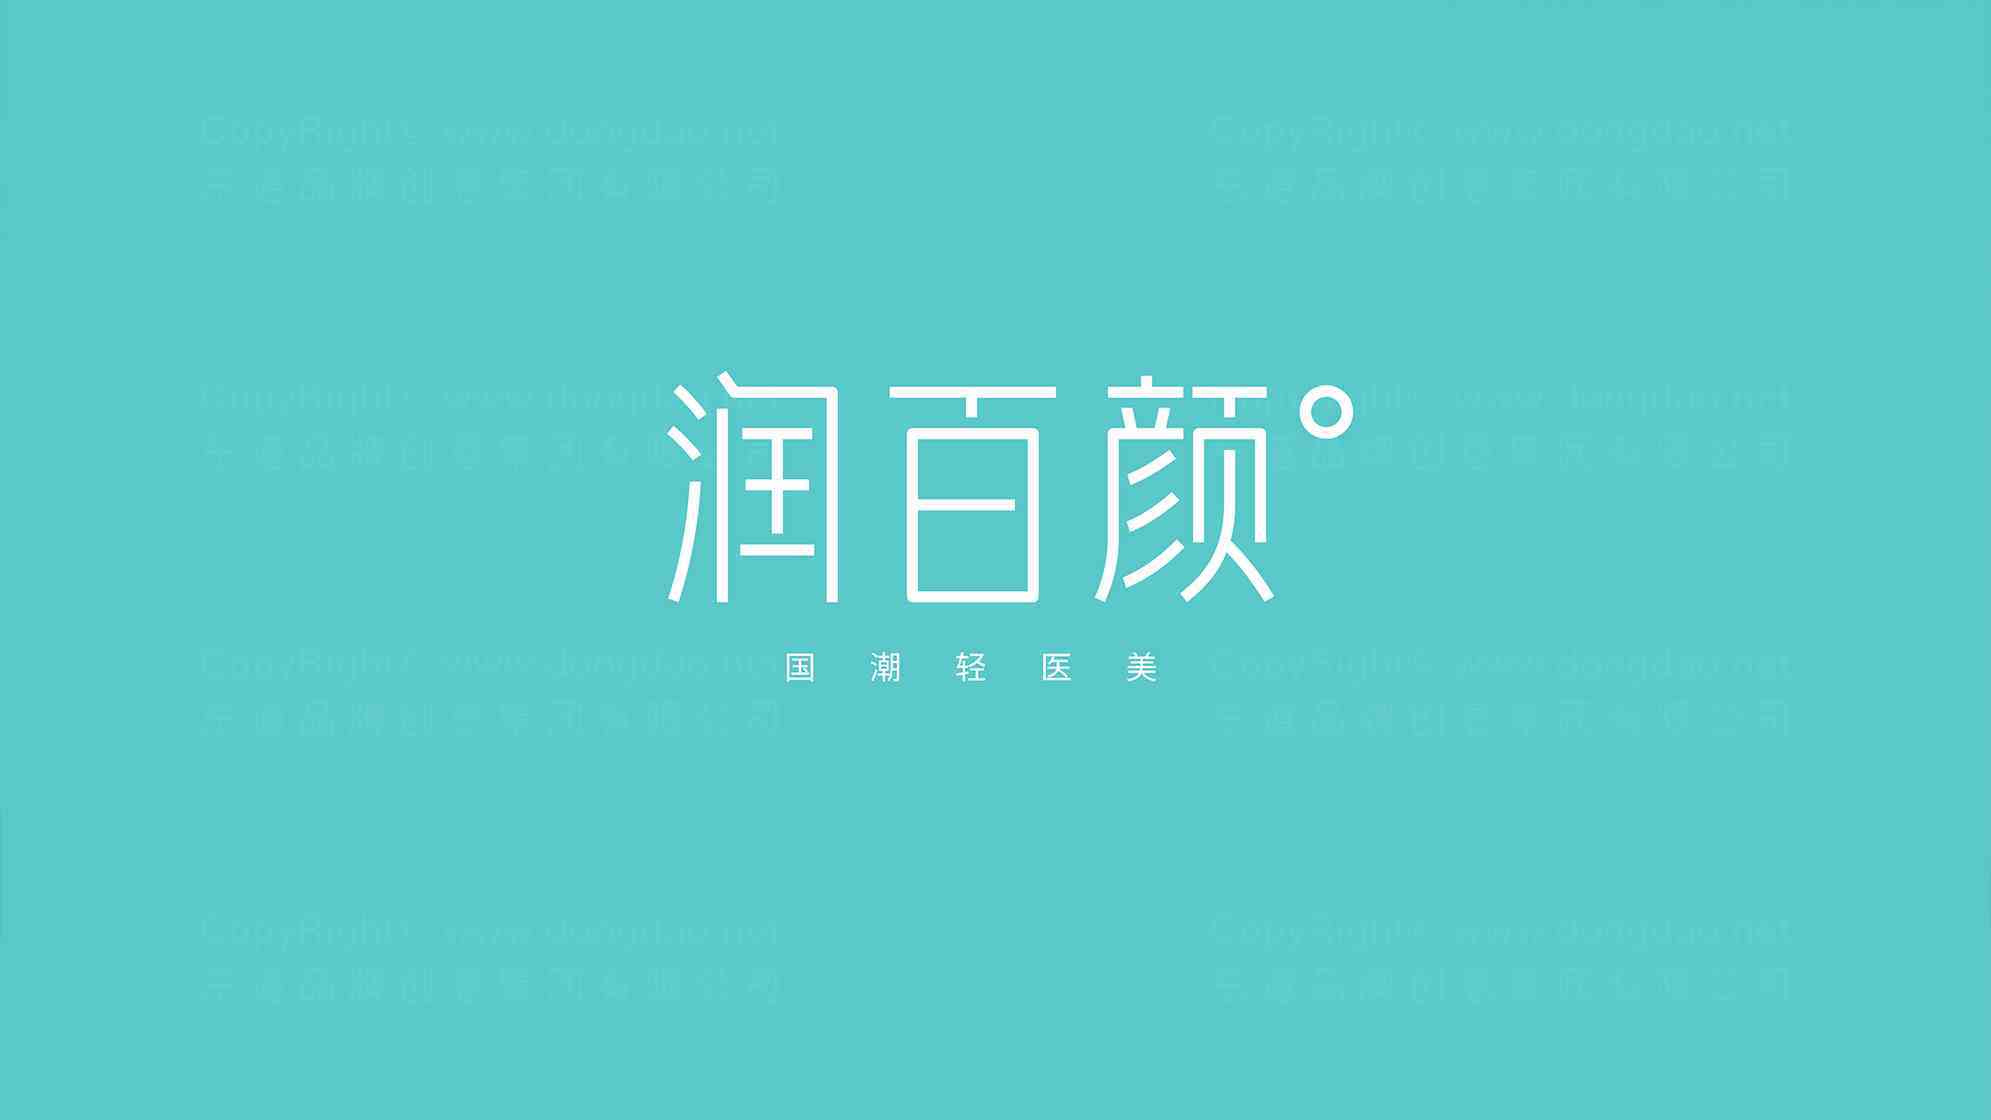 潤百顏logo設計圖片素材_2